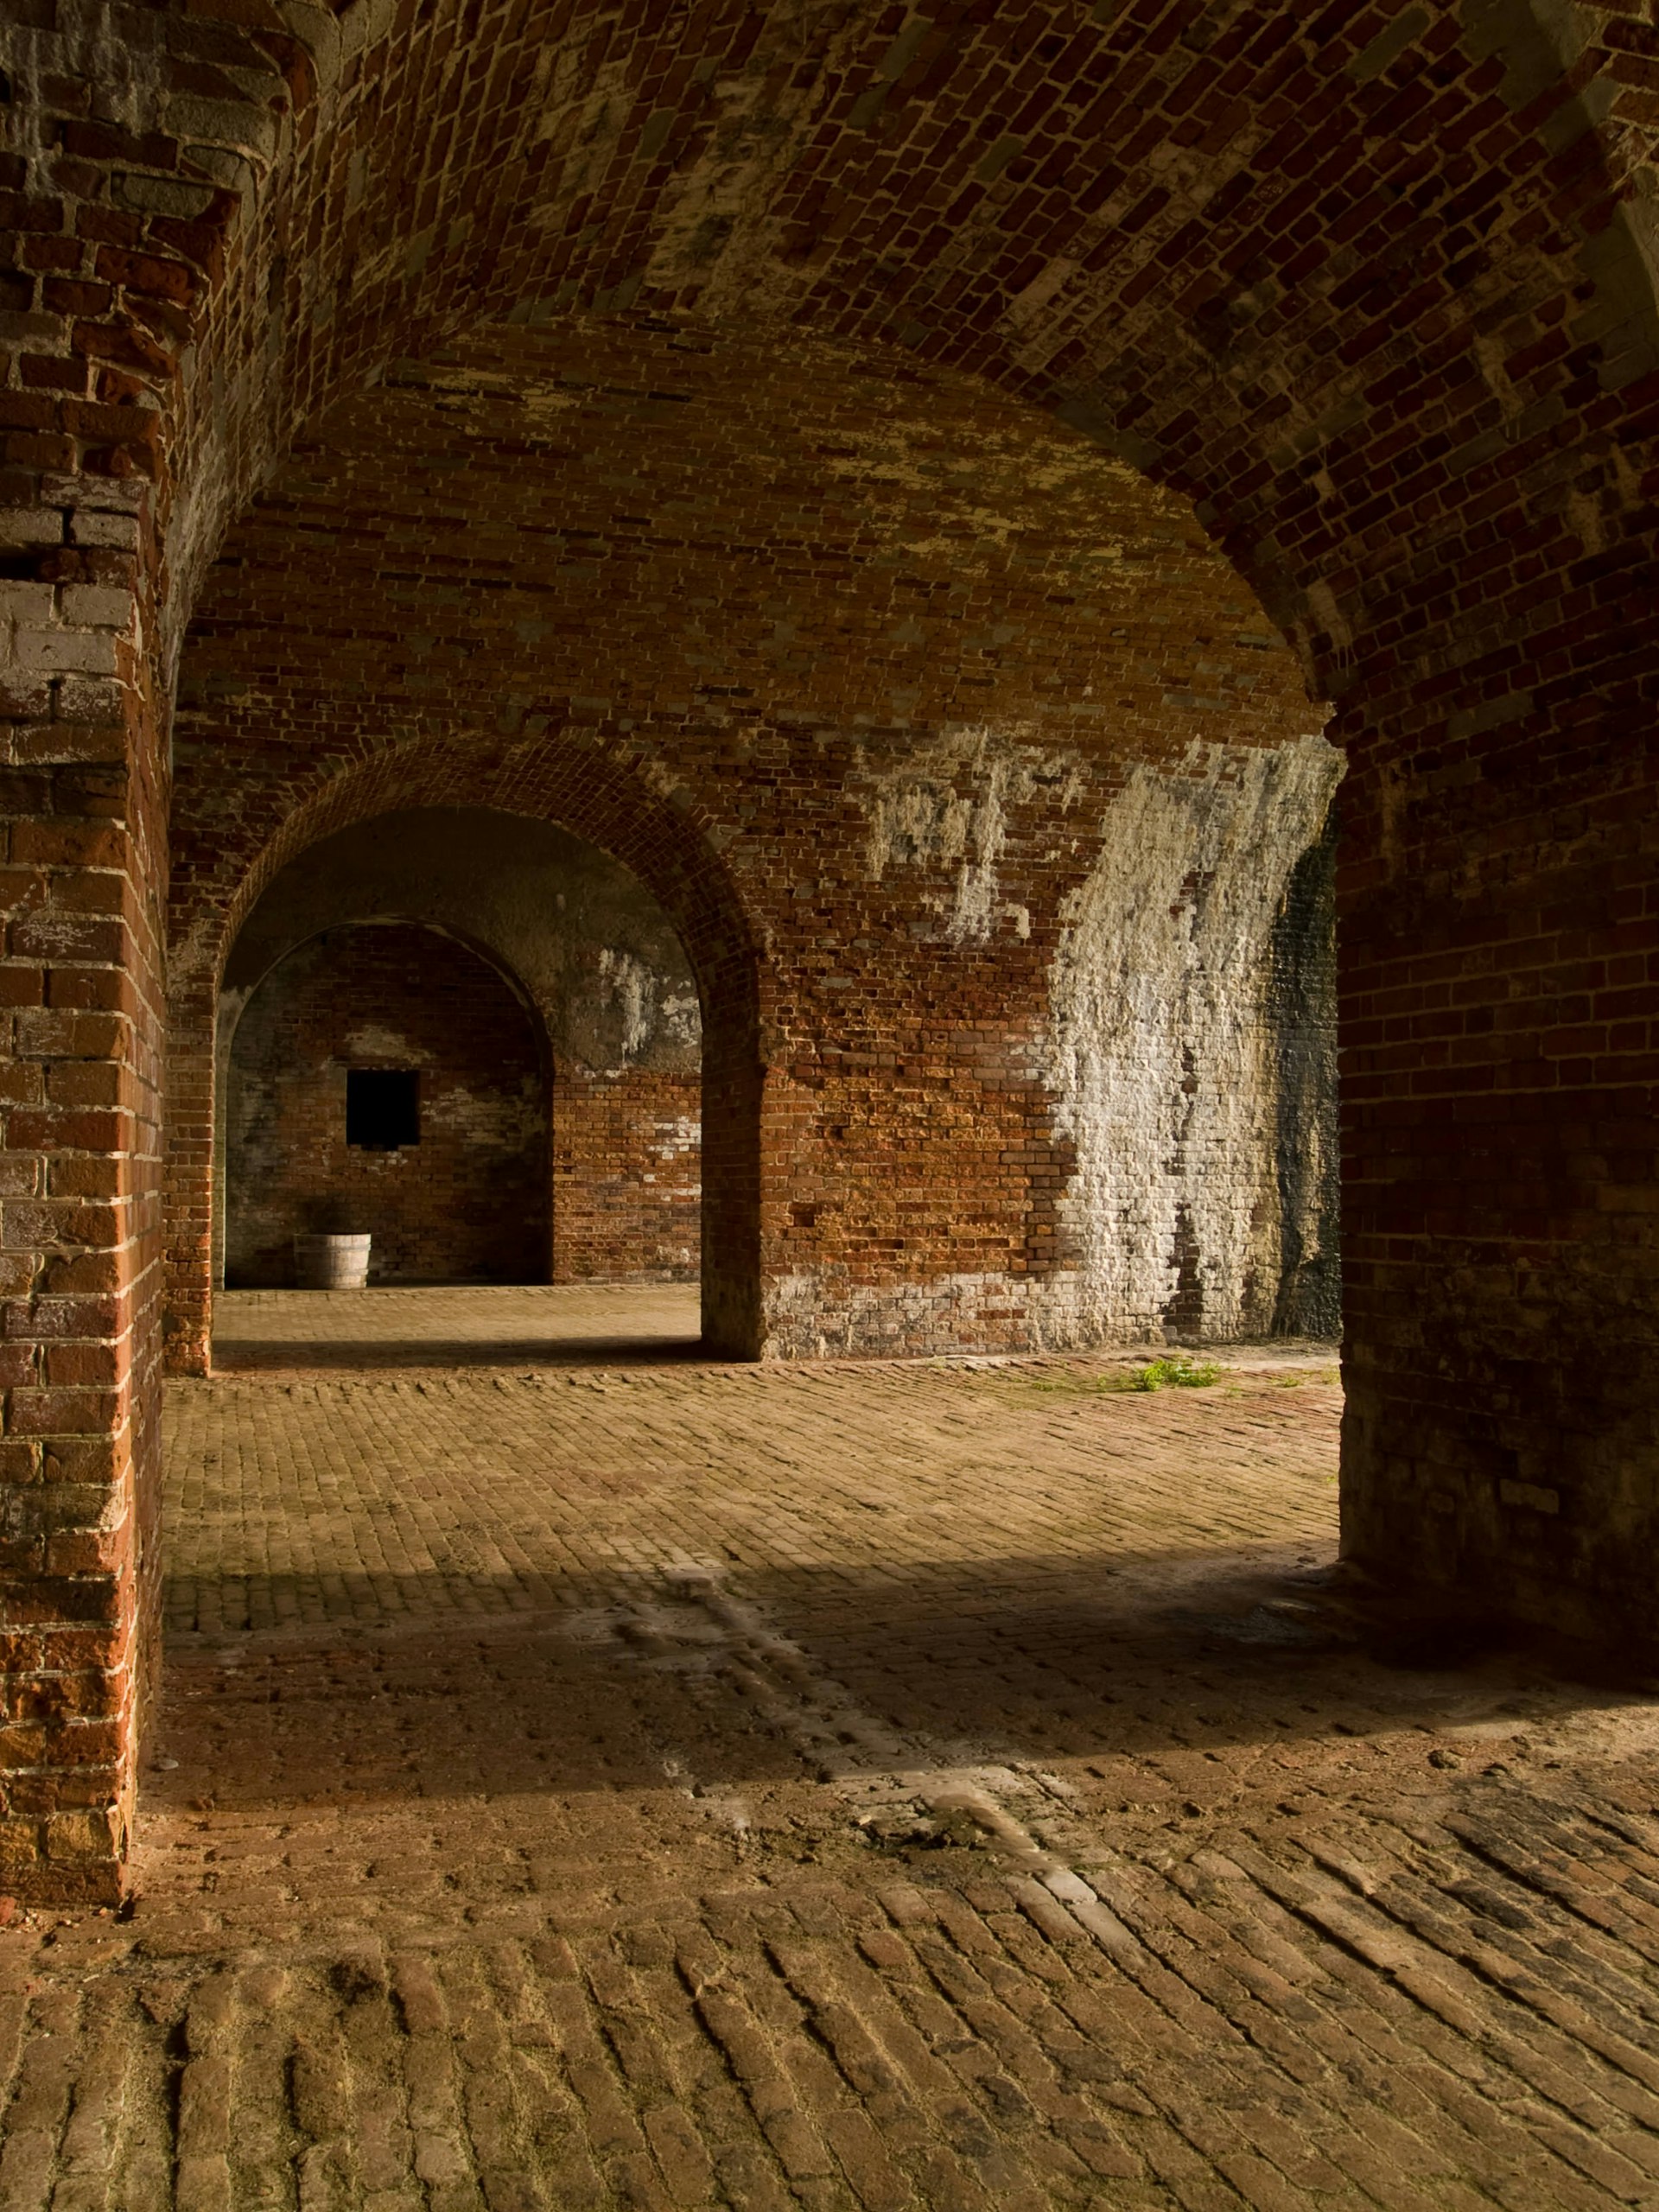 A brick hallway of Fort Morgan in Alabama.